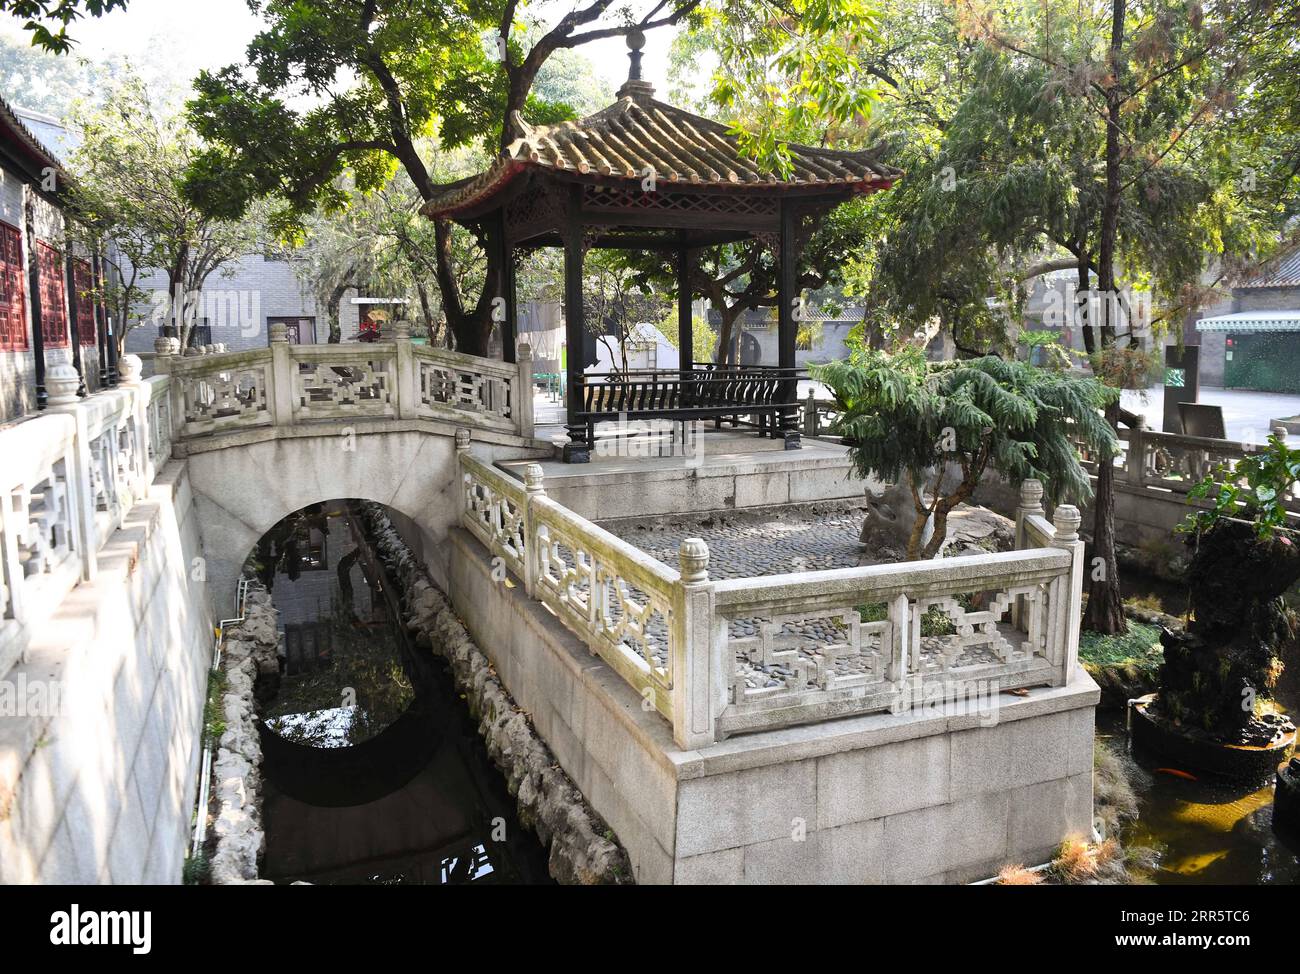 210115 -- FOSHAN, 15. Januar 2021 -- Foto aufgenommen am 15. Januar 2021 zeigt den Blick auf den Qinghui Garten im Shunde Bezirk der Stadt Foshan, Provinz Guangdong in Südchina. Der Qinghui Garden wurde während der Ming-Dynastie von 1368 bis 1644 erbaut und mehrmals renoviert. 2013 wurde der Garten als bedeutender historischer und kultureller Ort auf nationaler Ebene mit einer Fläche von 22.000 Quadratmetern unter Denkmalschutz gestellt. CHINA-GUANGDONG-FOSHAN-QINGHUI GARDENCN DengxHua PUBLICATIONxNOTxINxCHN Stockfoto